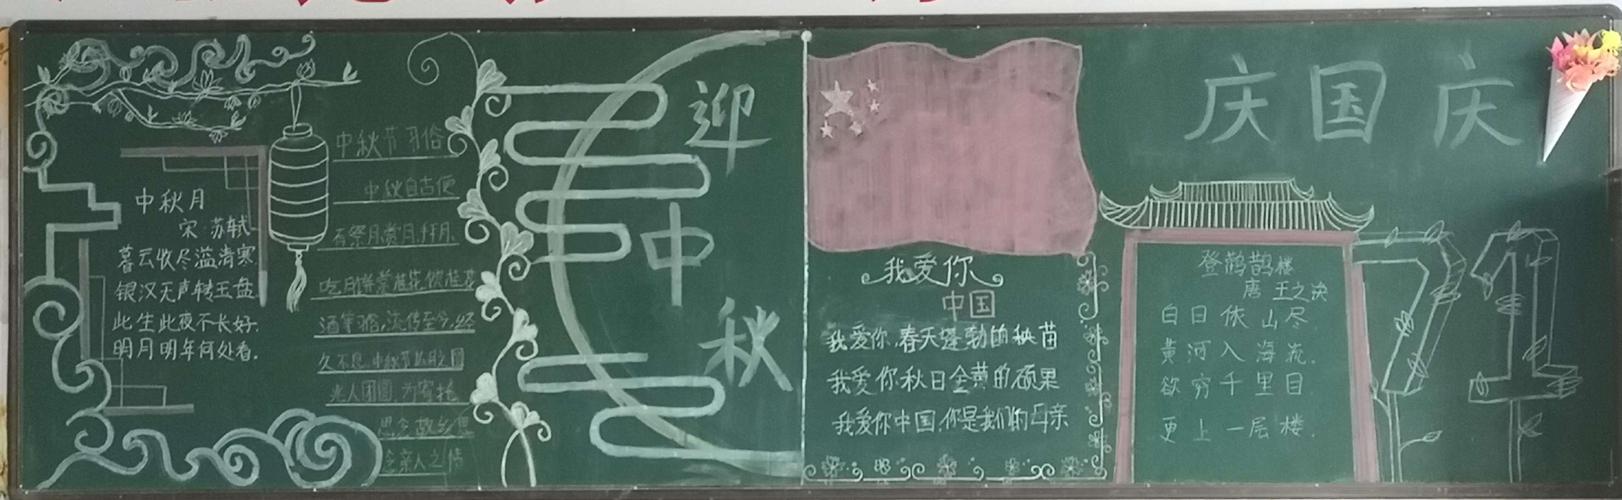 赵宅中心小学开展迎中秋庆国庆主题黑板报比赛副本 写美篇为让